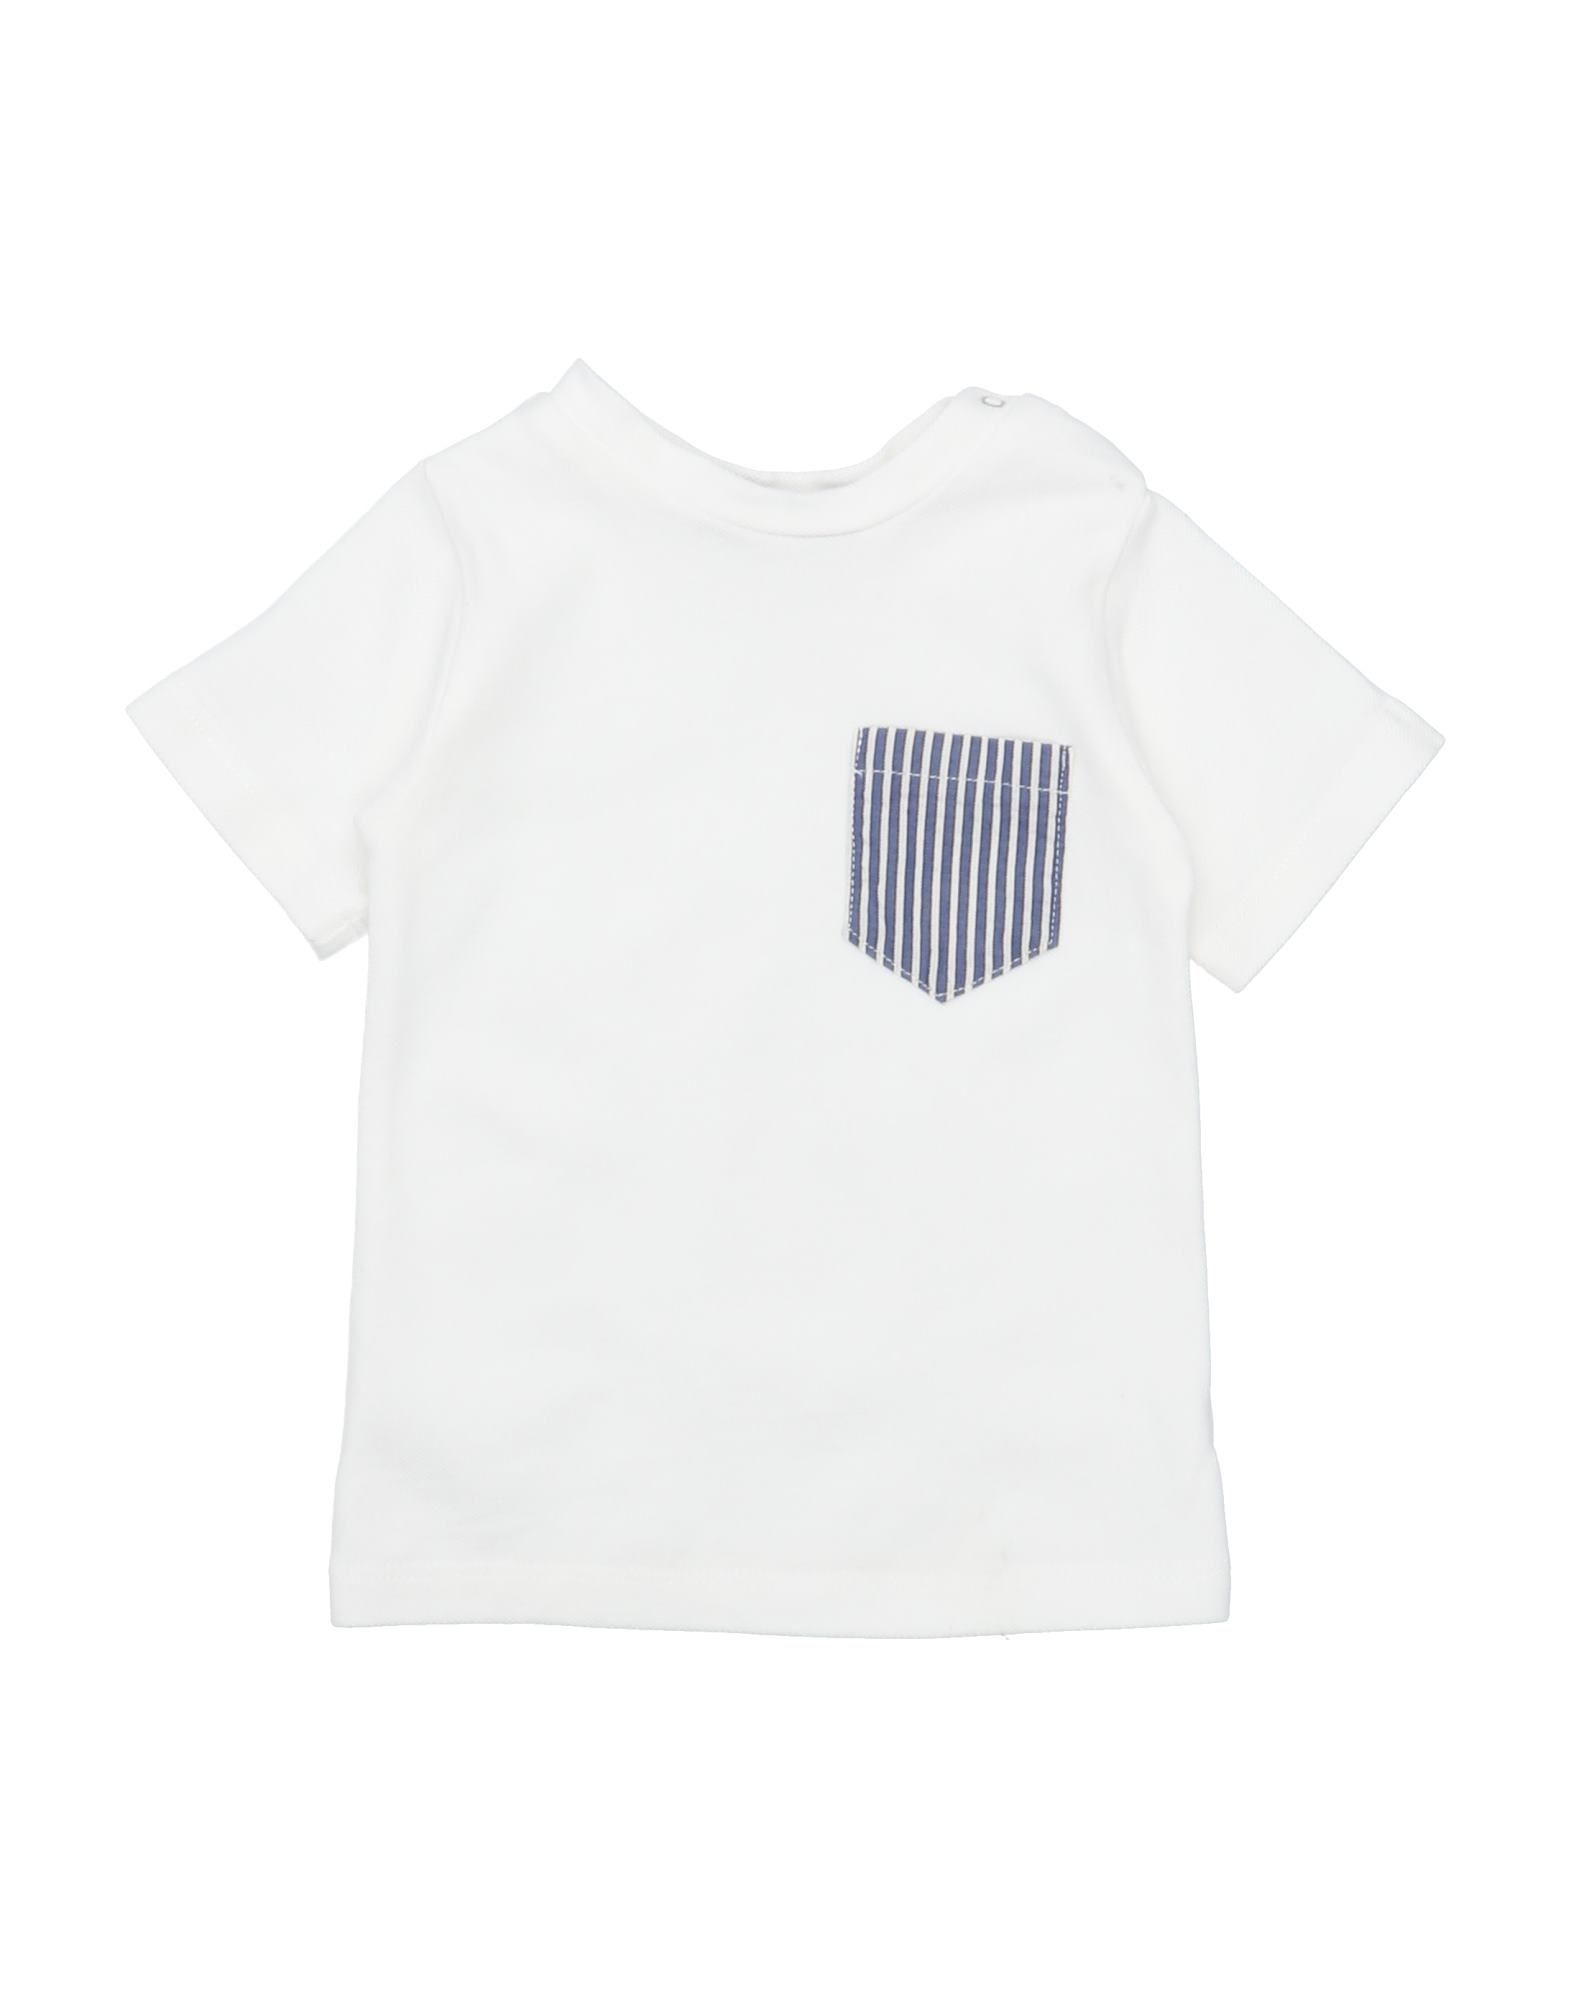 Abracadabra Kids' T-shirts In White